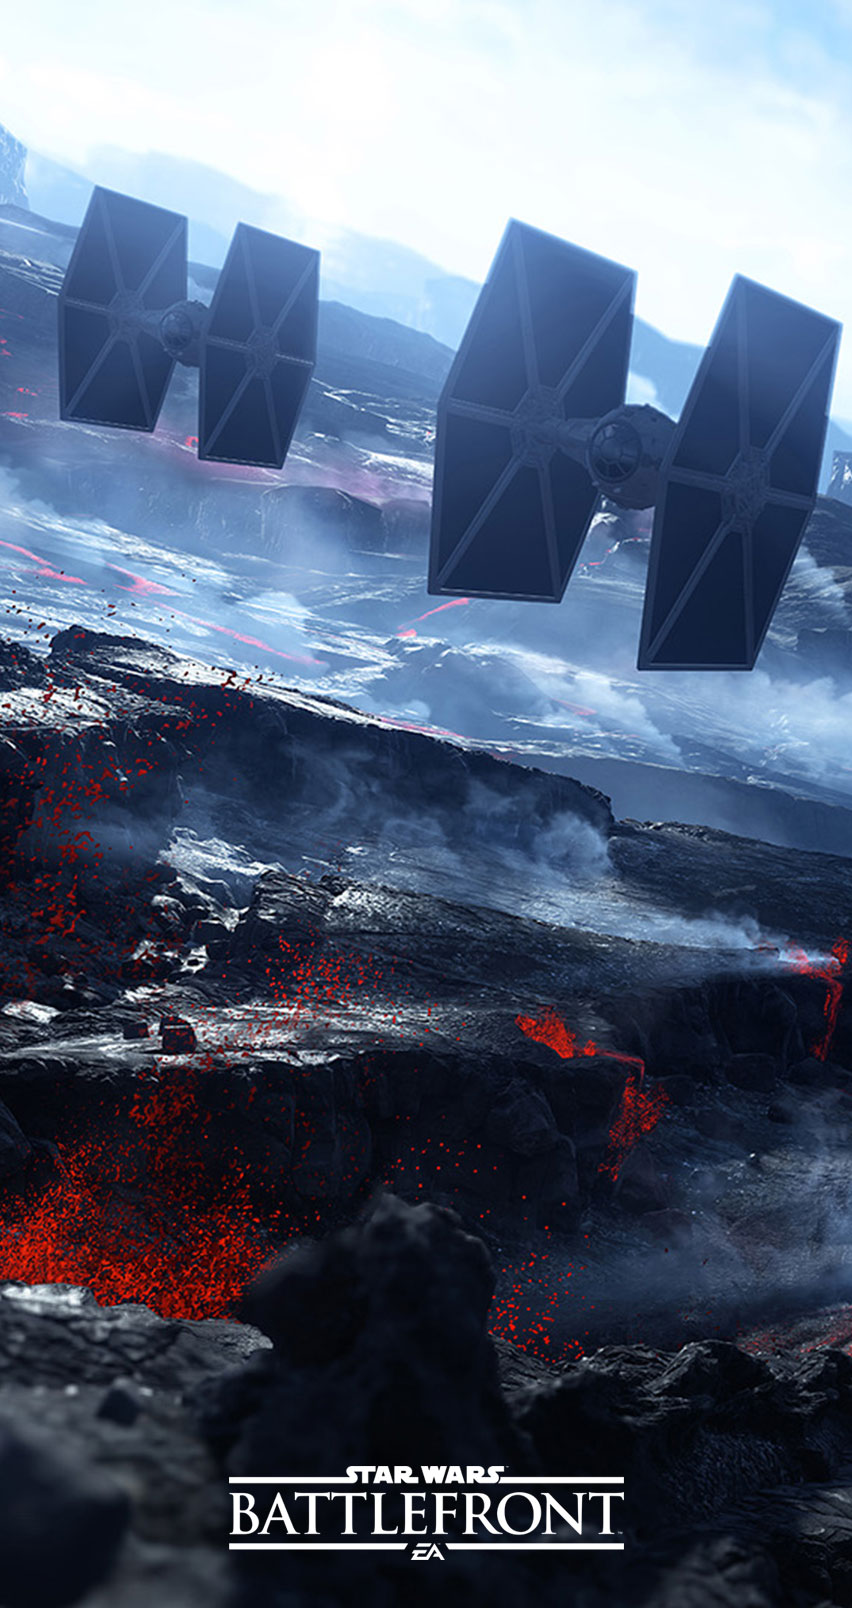 Star Wars Battlefront Gets New Smartphone Wallpaper; Downloadable Image Inside Games Cabin